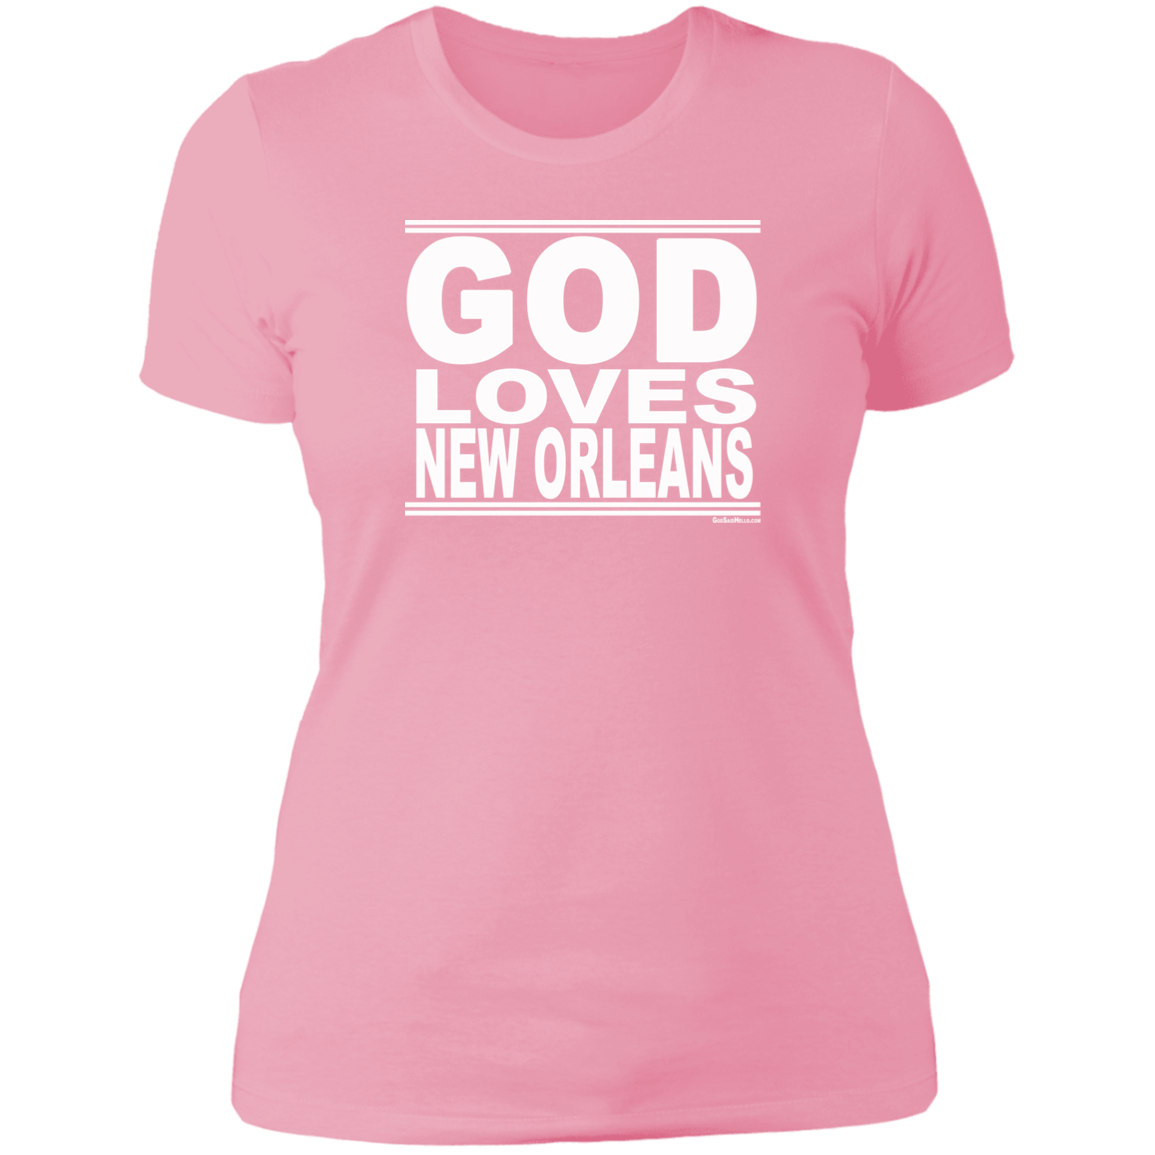 #GodLovesNewOrleans - Women's Shortsleeve Tee